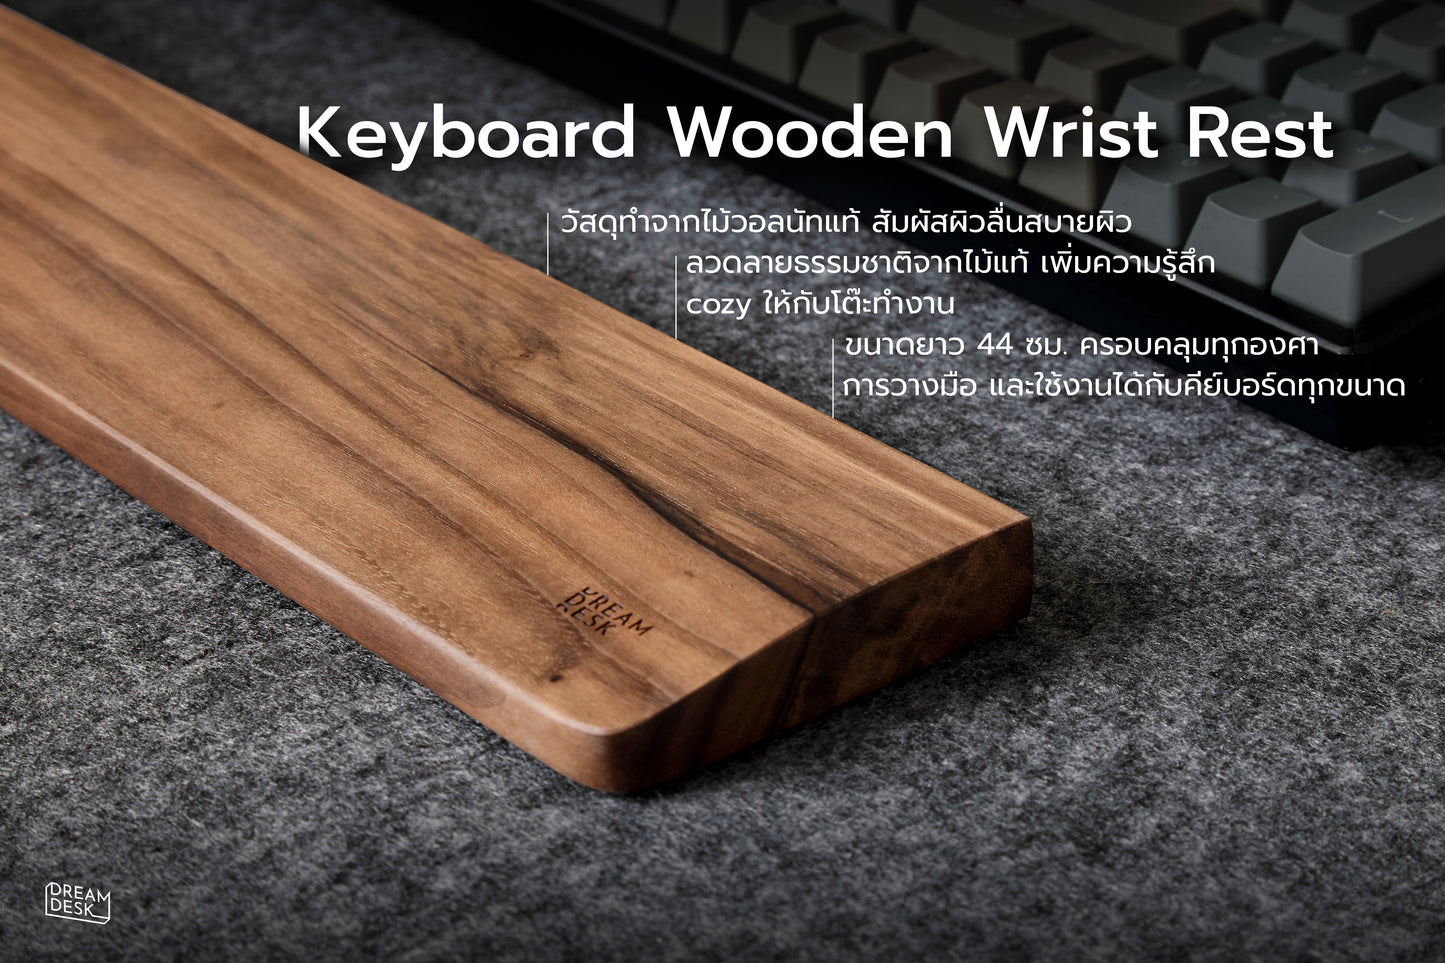 ไม้รองข้อมือ คีย์บอร์ด (Keyboard Wooden Wrist Rest)